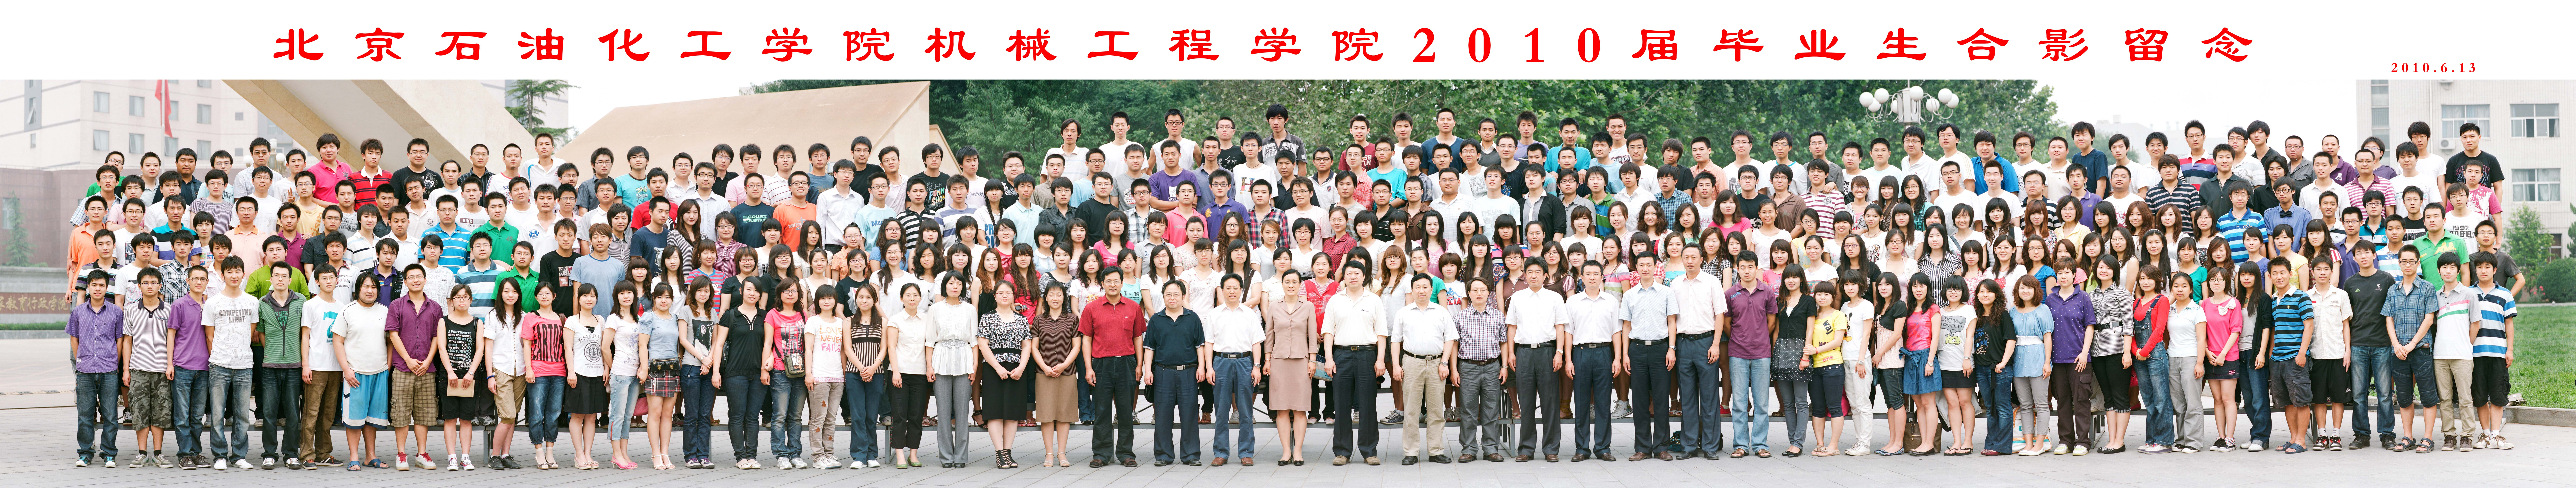 北京石油化工学院机械工程学院2010届毕业生合影.jpg